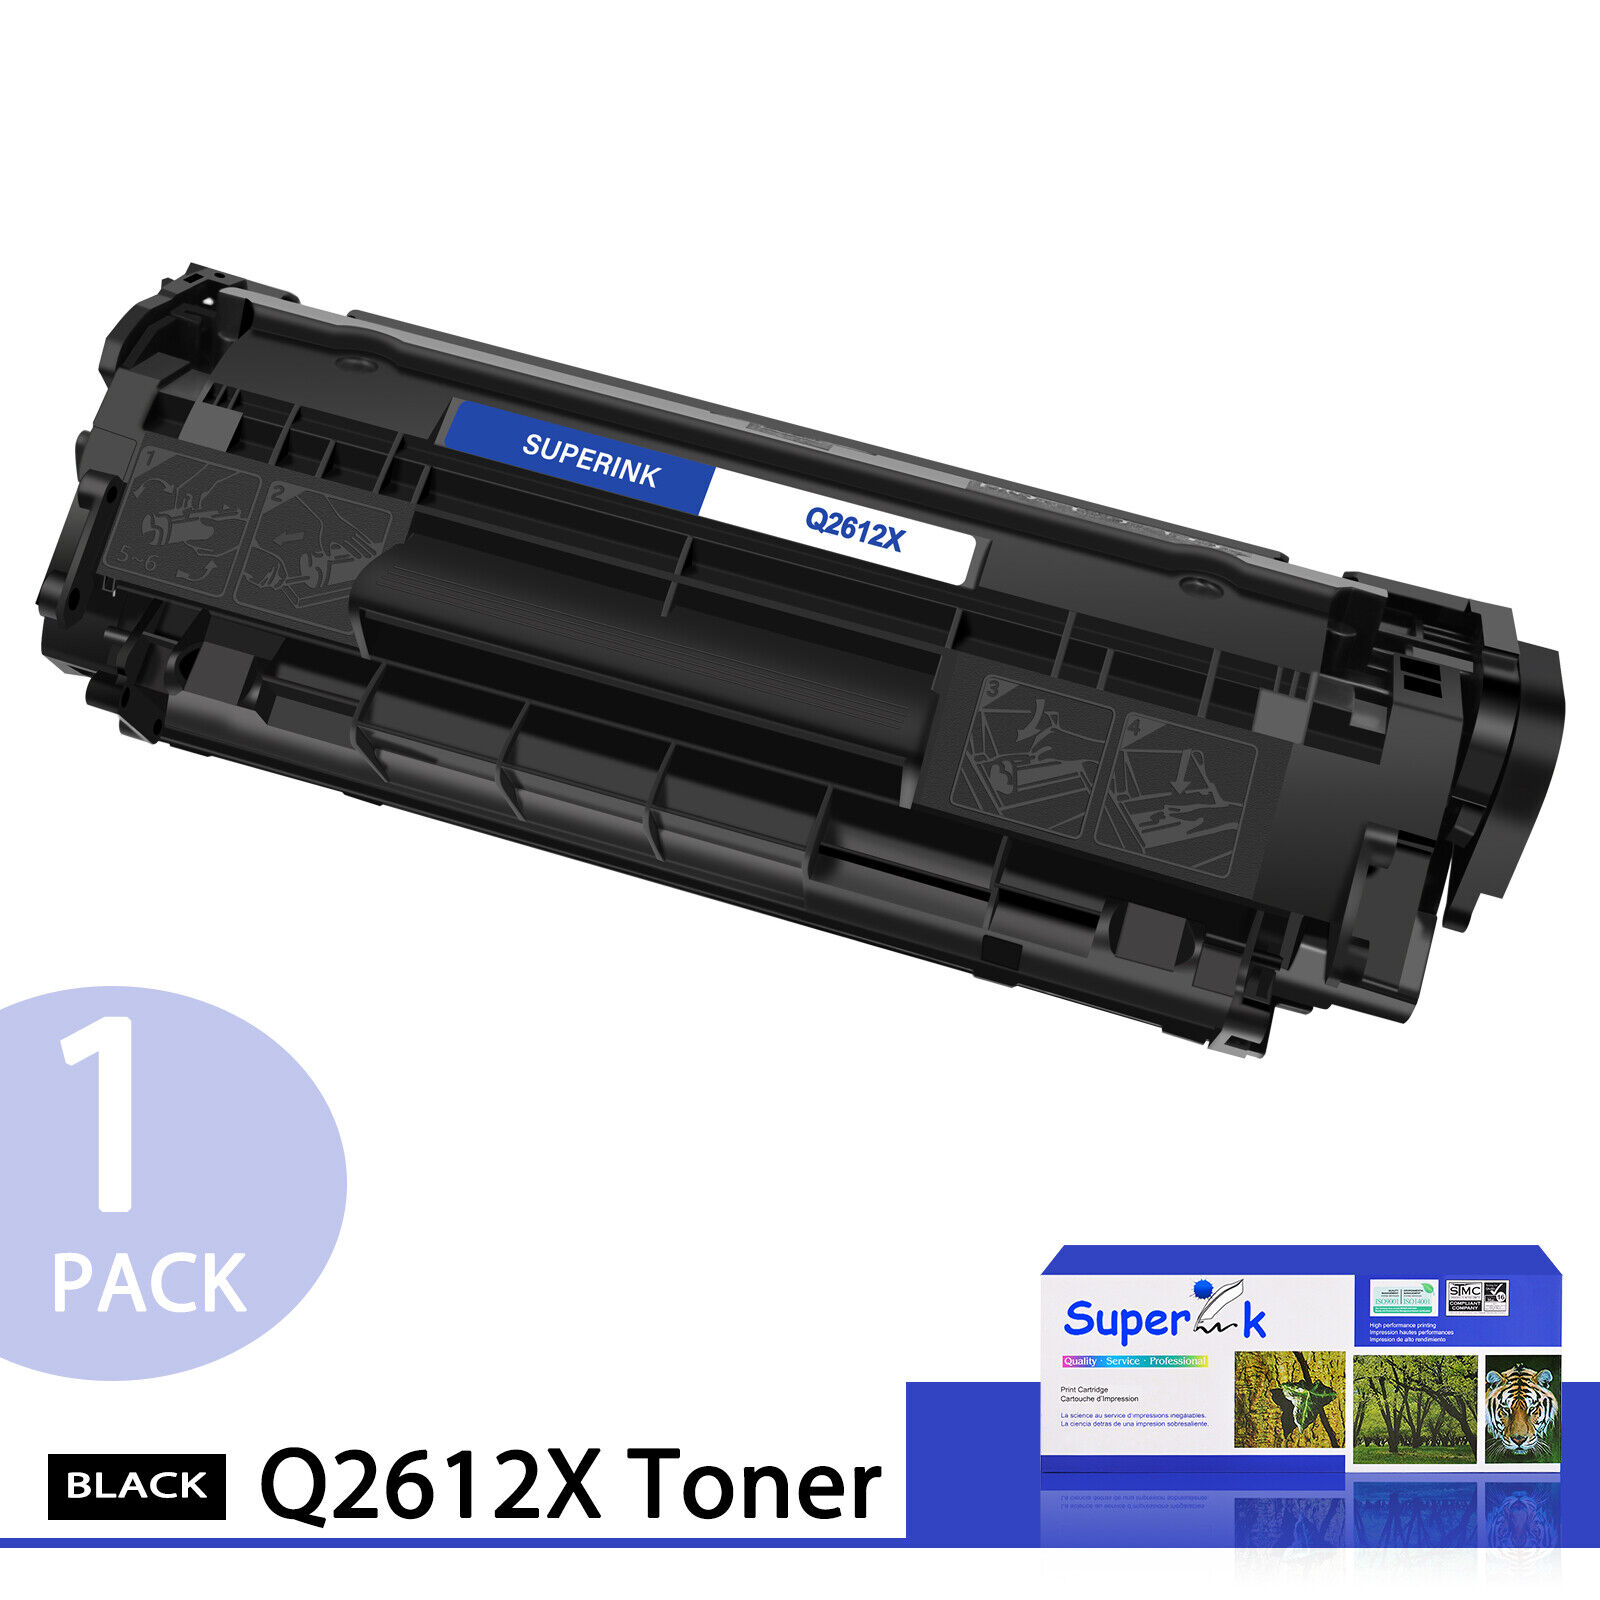 Q2612X 12X Toner Cartridge For HP 12X LaserJet 1012 1015 1018 3020 M1319 MFP LOT